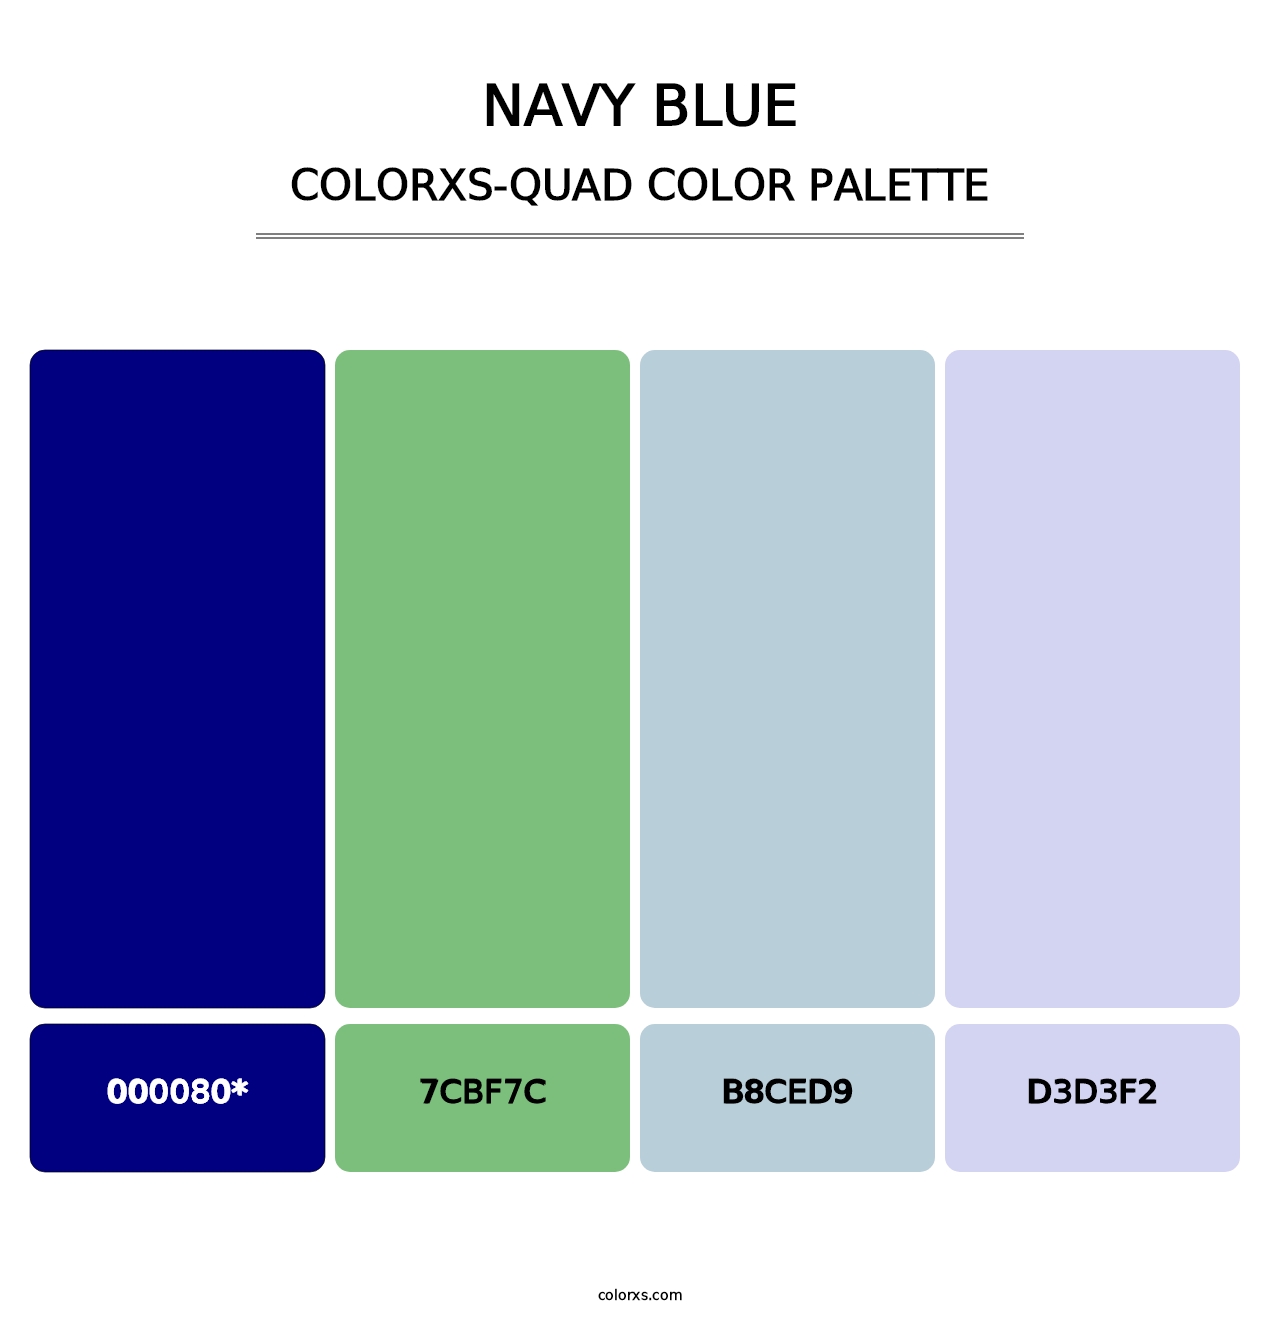 Navy Blue - Colorxs Quad Palette